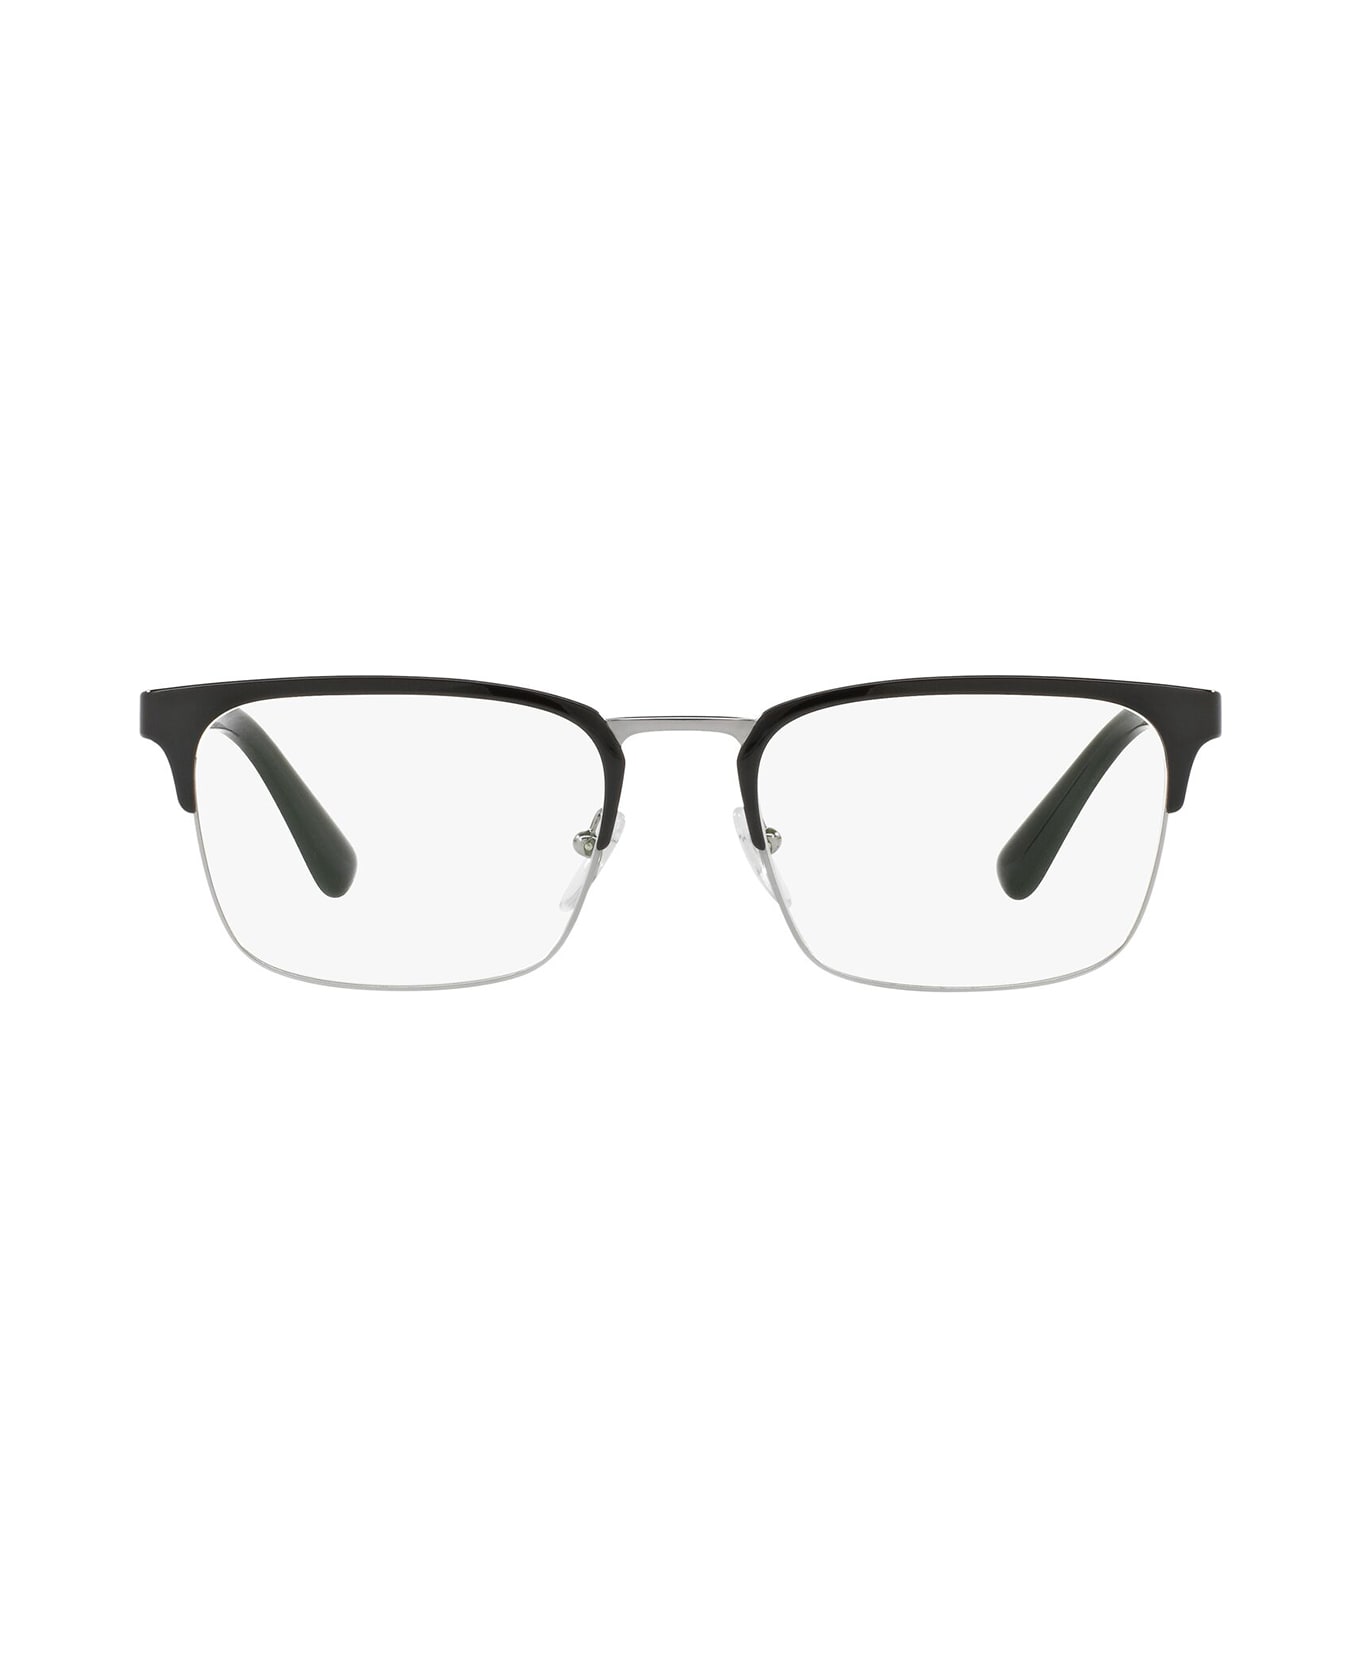 Prada Eyewear Pr 54tv Matte Black Glasses - Matte Black